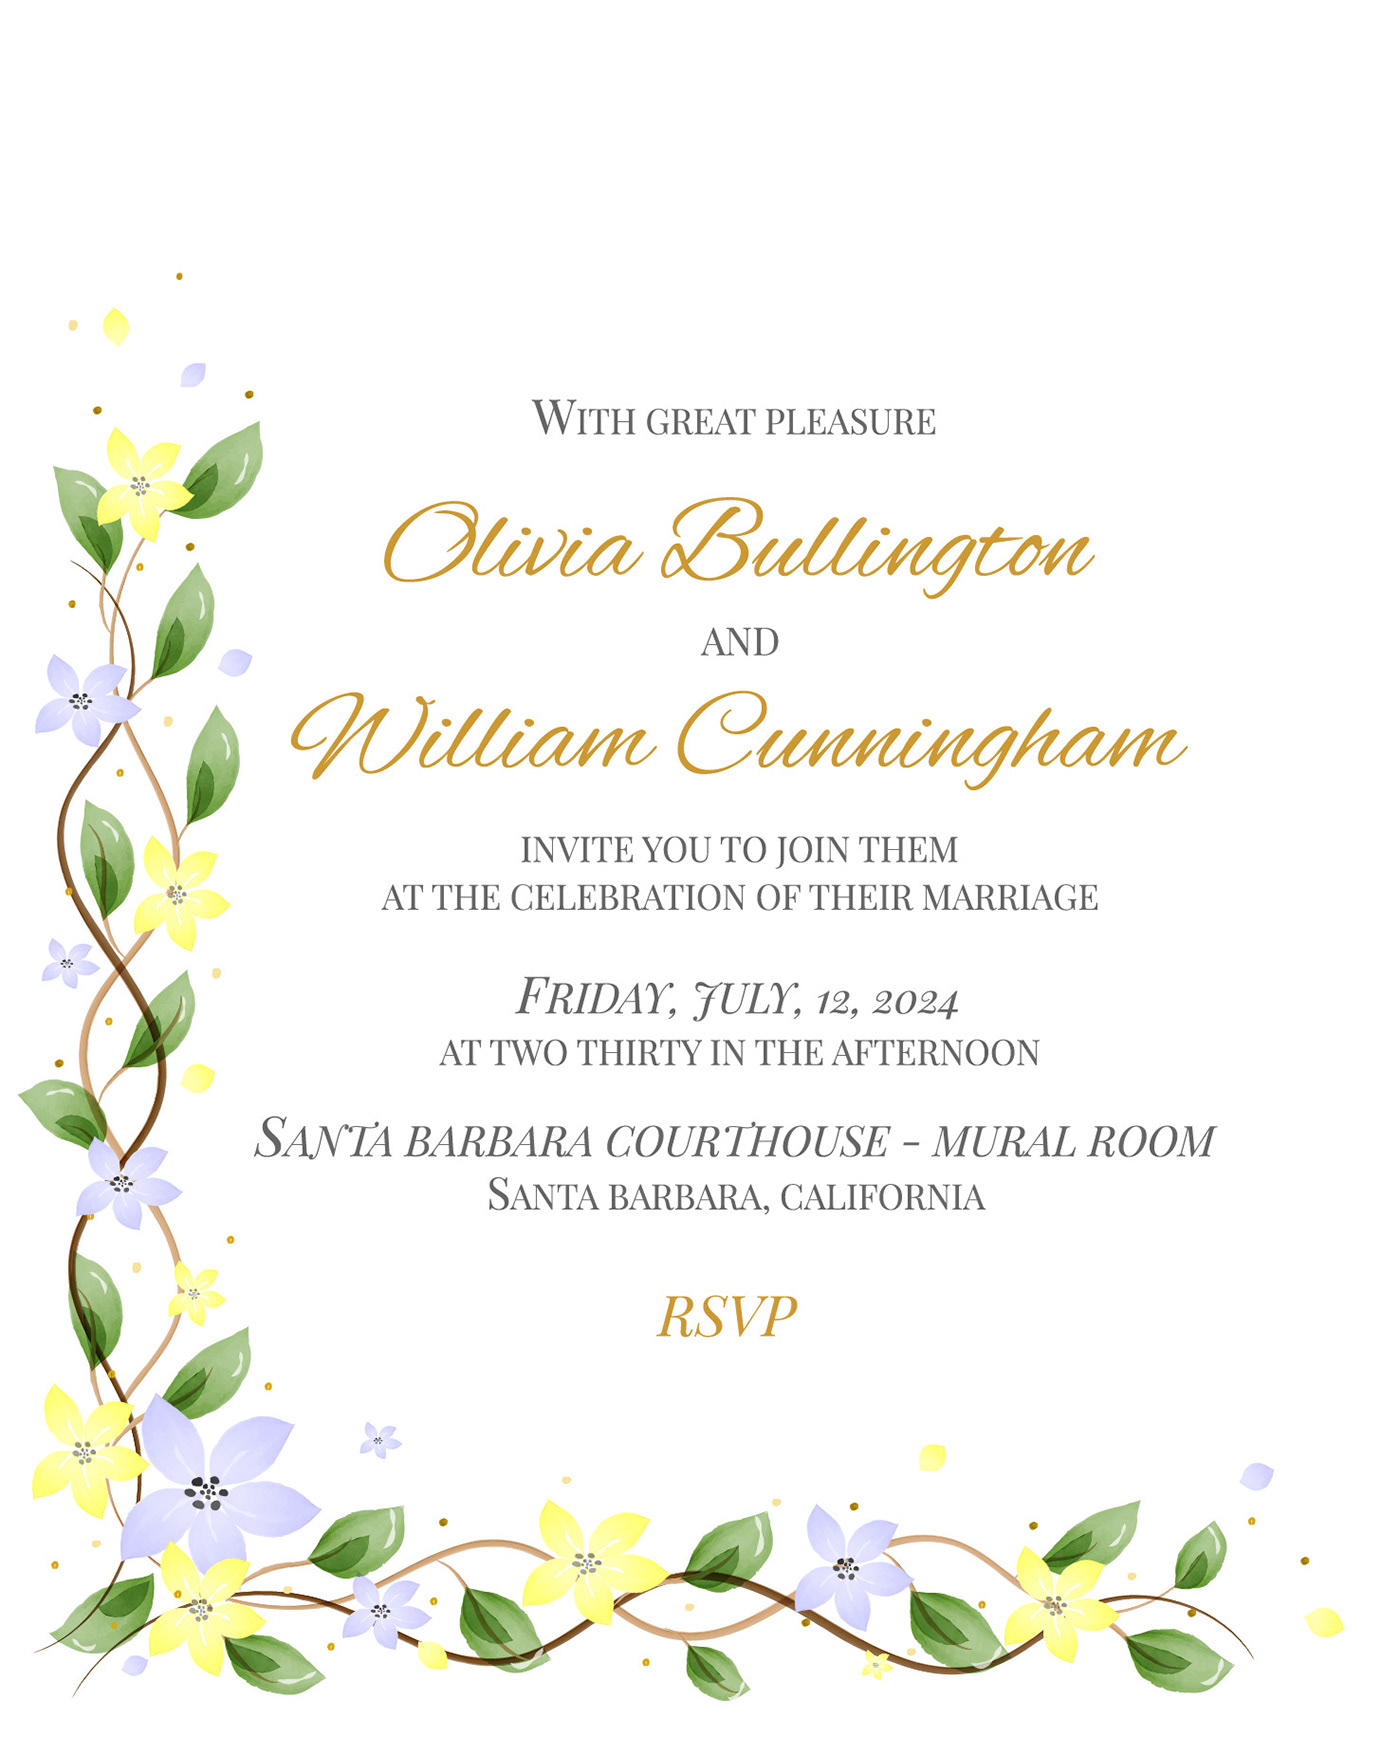 wedding wedding invitation card watercolor save the date Invitation invite Wedding Card invitation design marriage